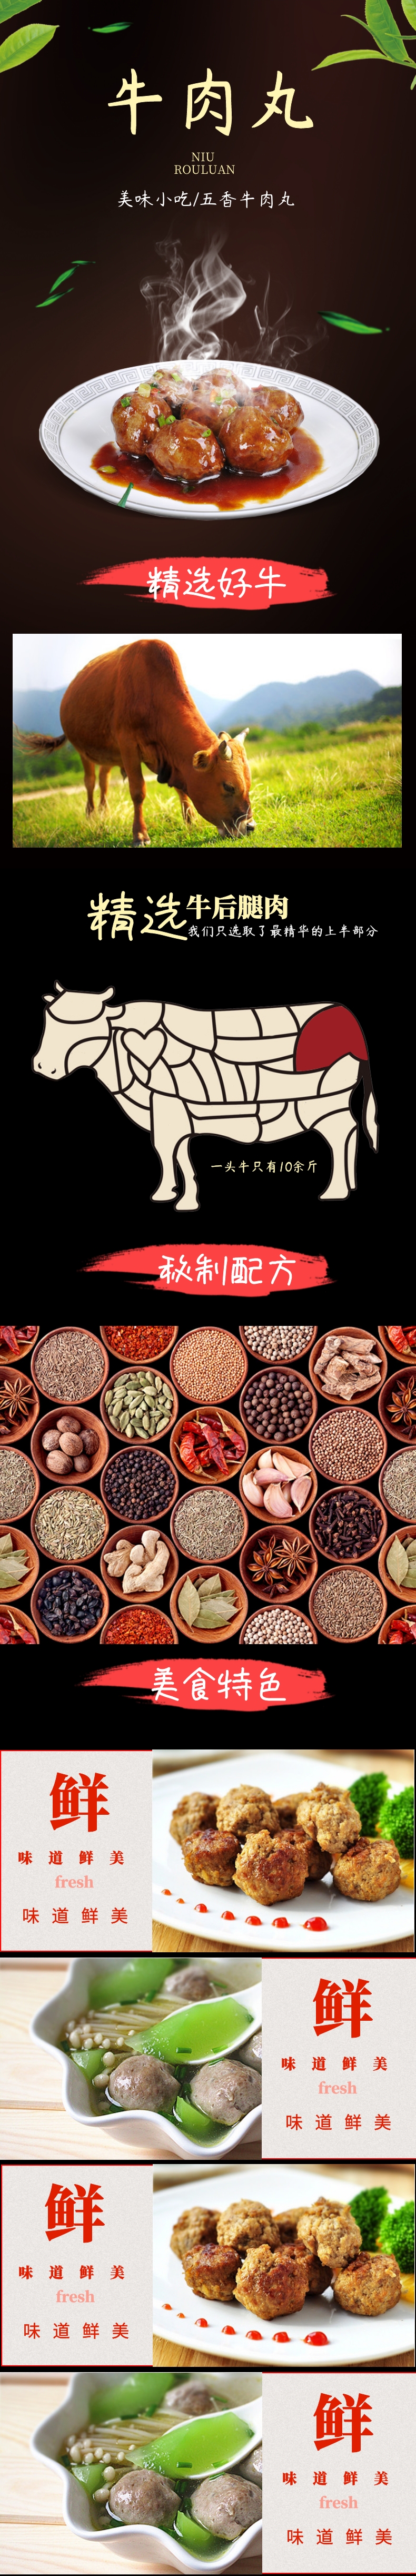 中国风牛肉丸食品详情页产品描述